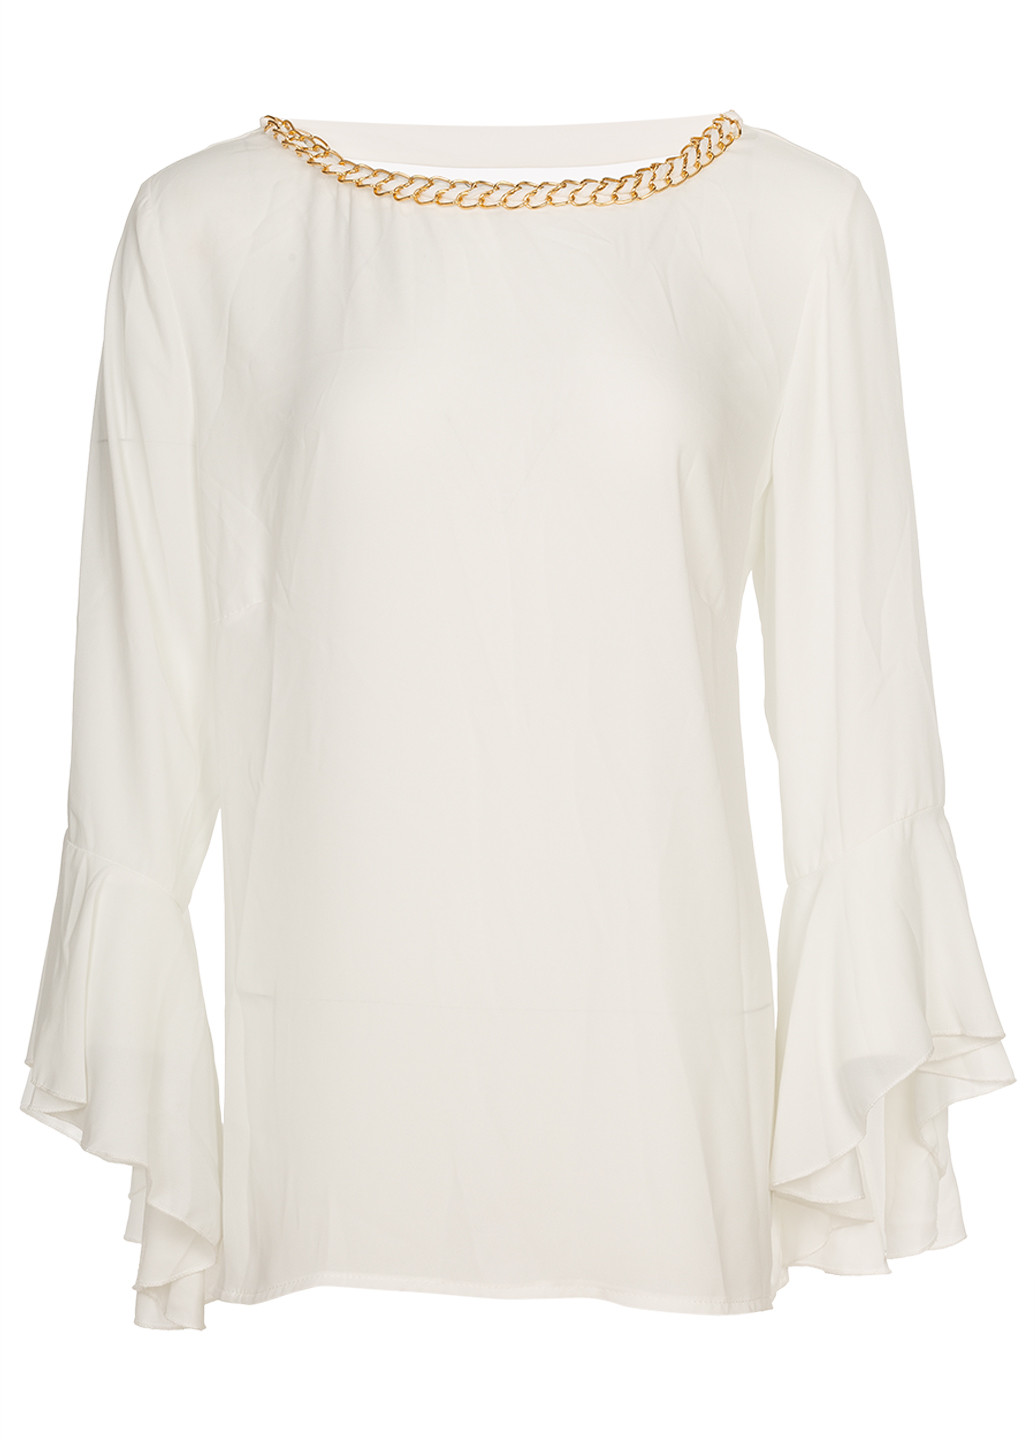 Біла літня шифонова жіноча блузка з довгими рукавами. Rinascimento